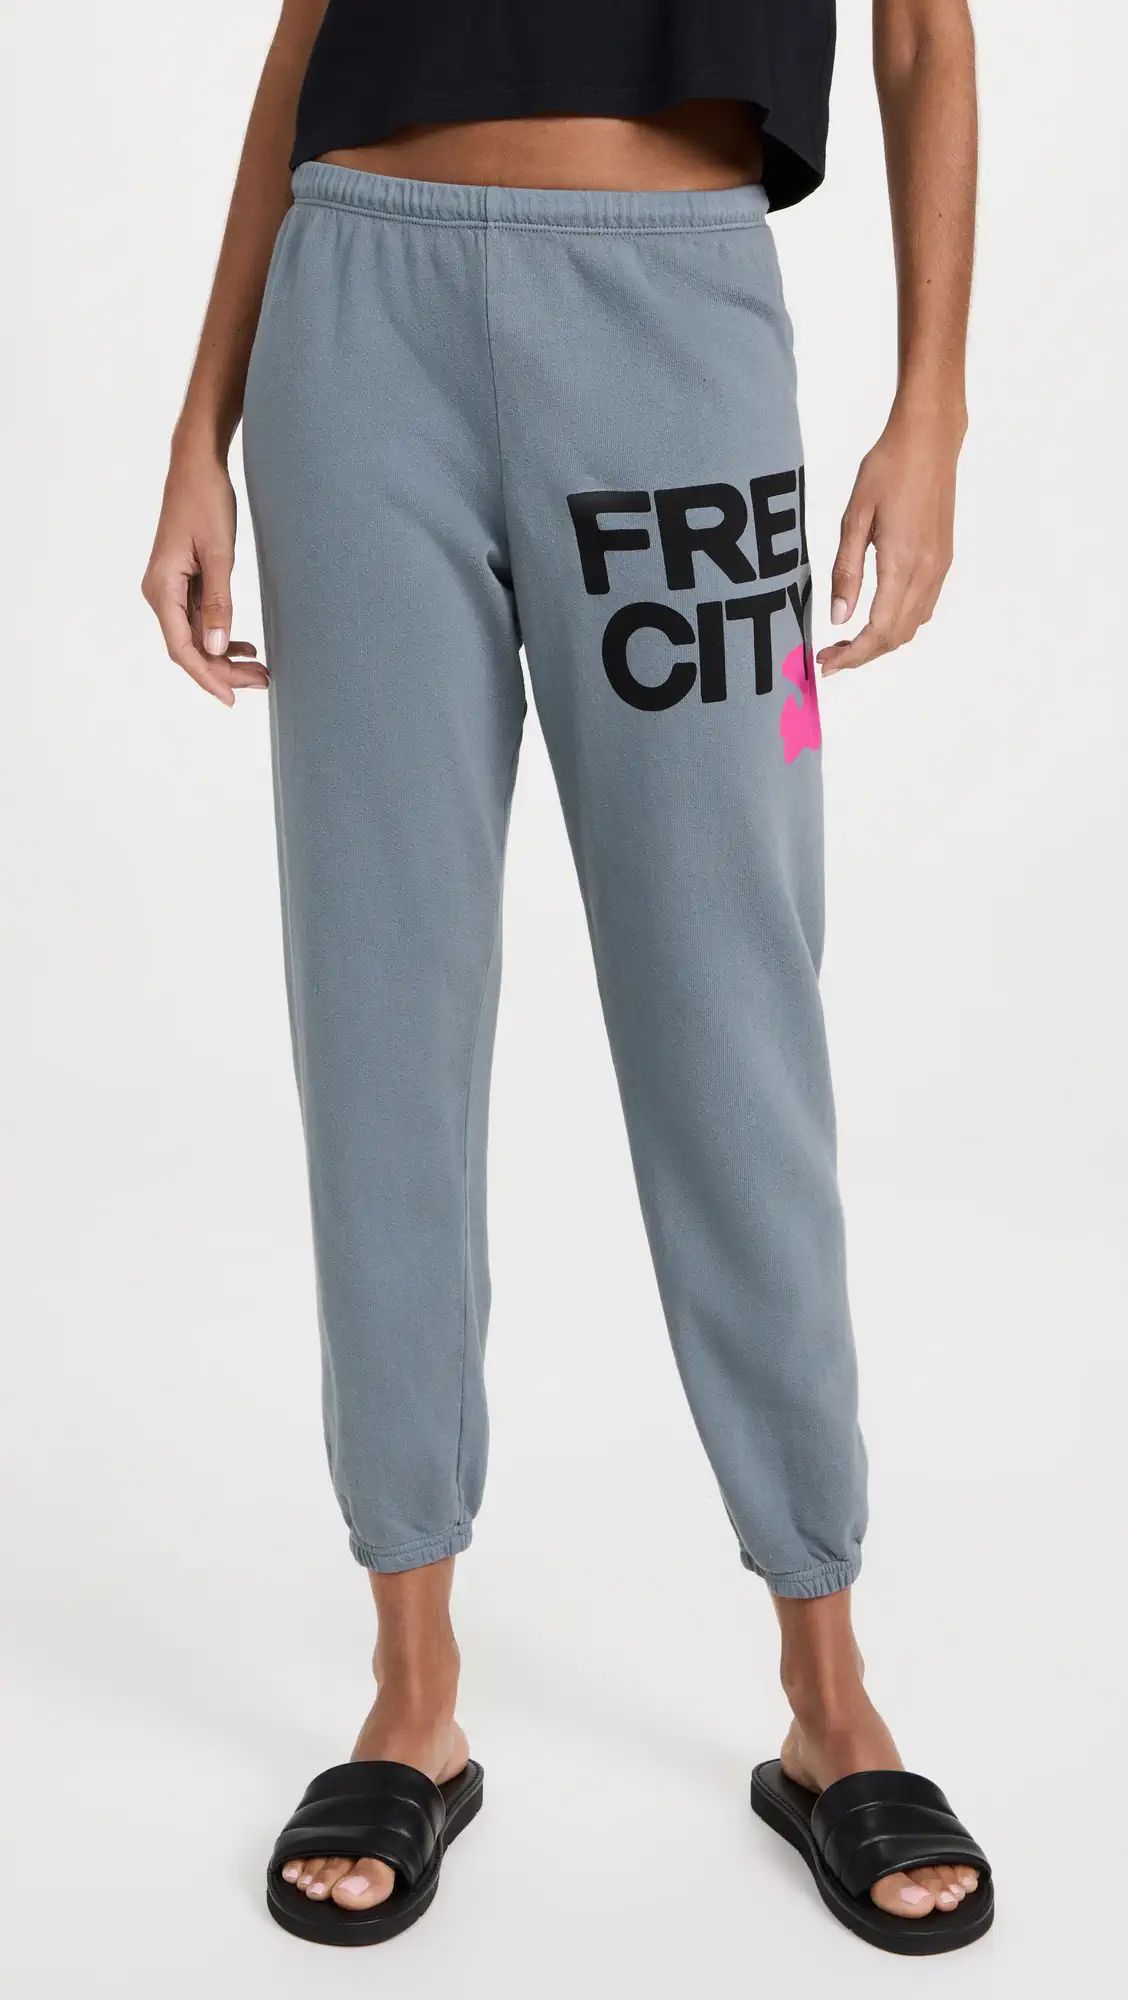 FREECITY Freecity Large Sweatpants | Shopbop | Shopbop